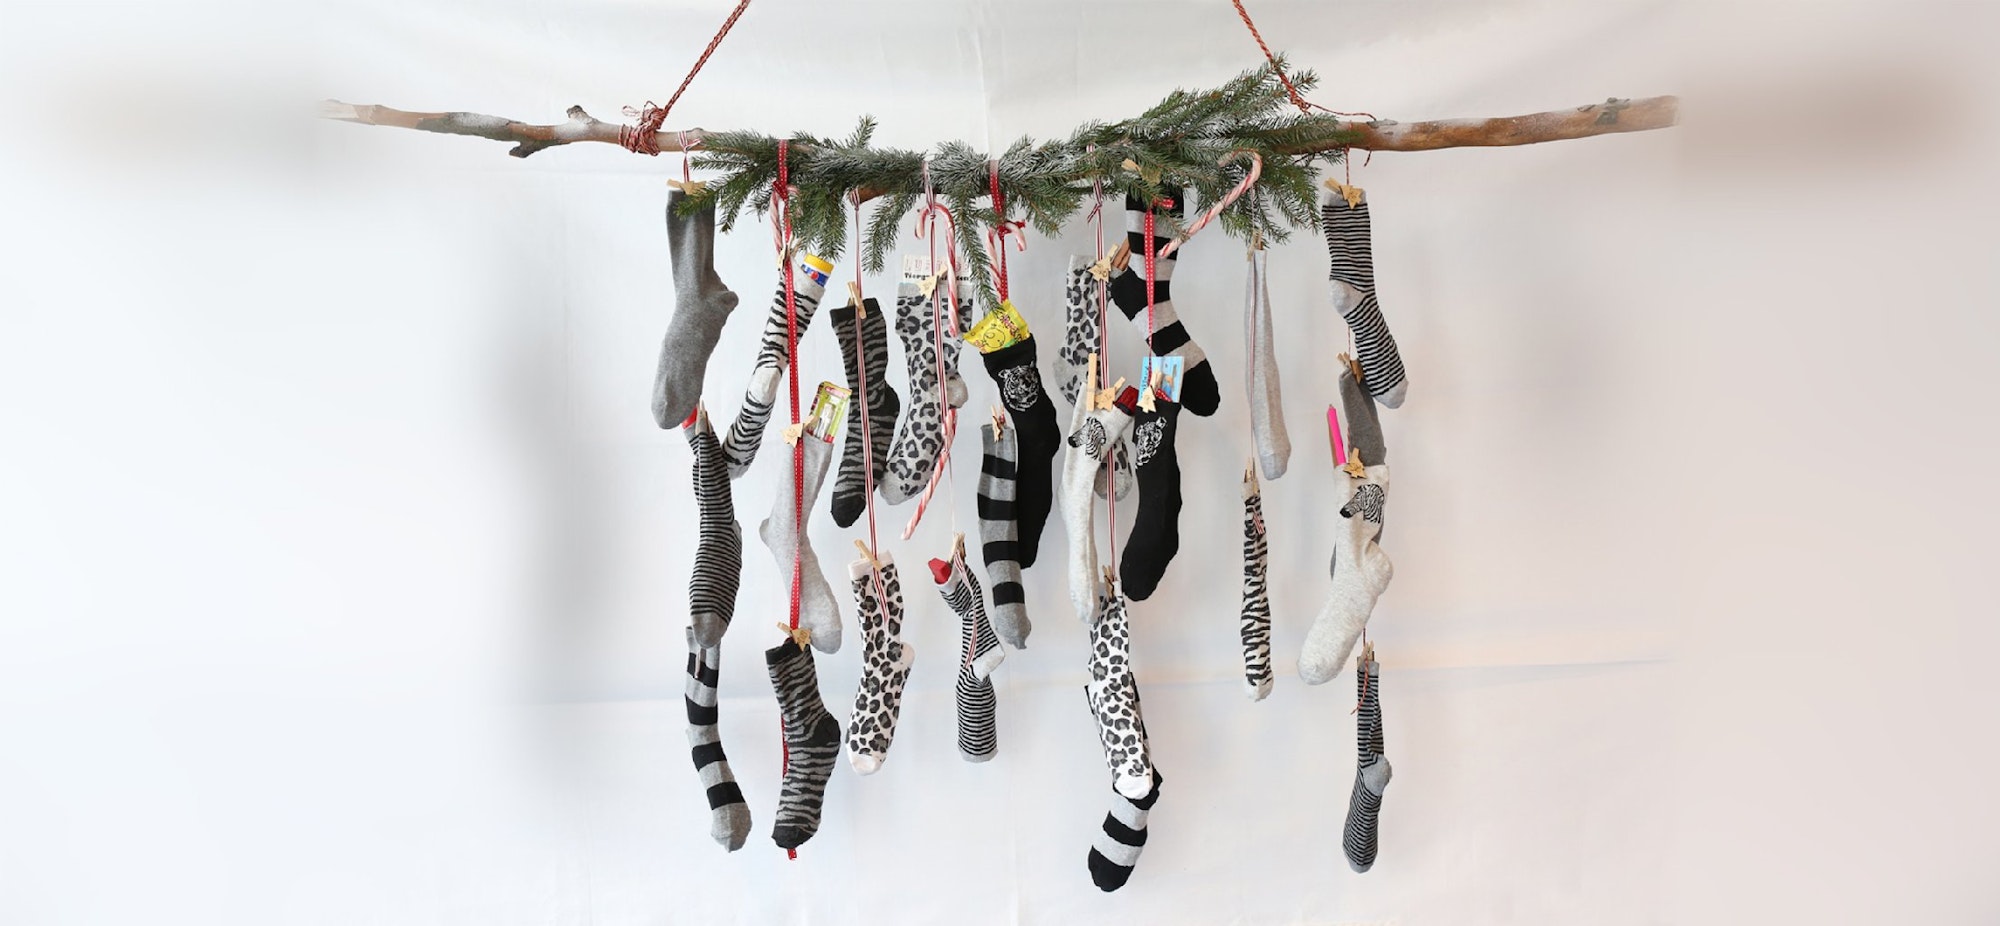 Adventskalender selber basteln: Hier haben wir Sockenpaare genommen, die auch als zusätzliches Geschenk verwendet werden können - Socken braucht man schließlich immer!